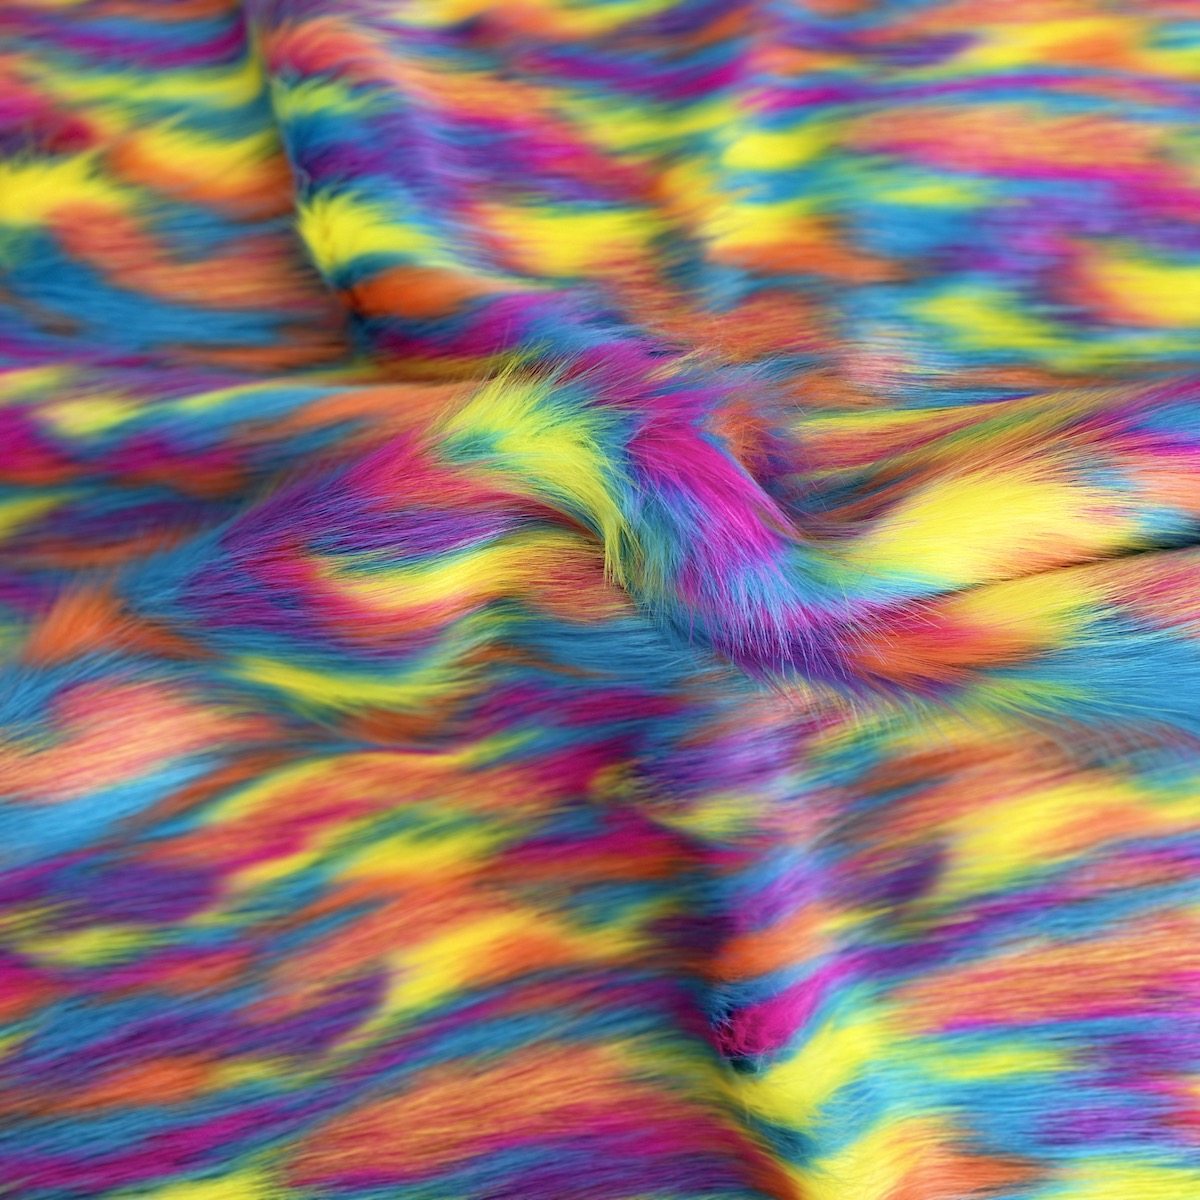 Tissu fausse fourrure Ysidro à poils longs multicolore arc-en-ciel 